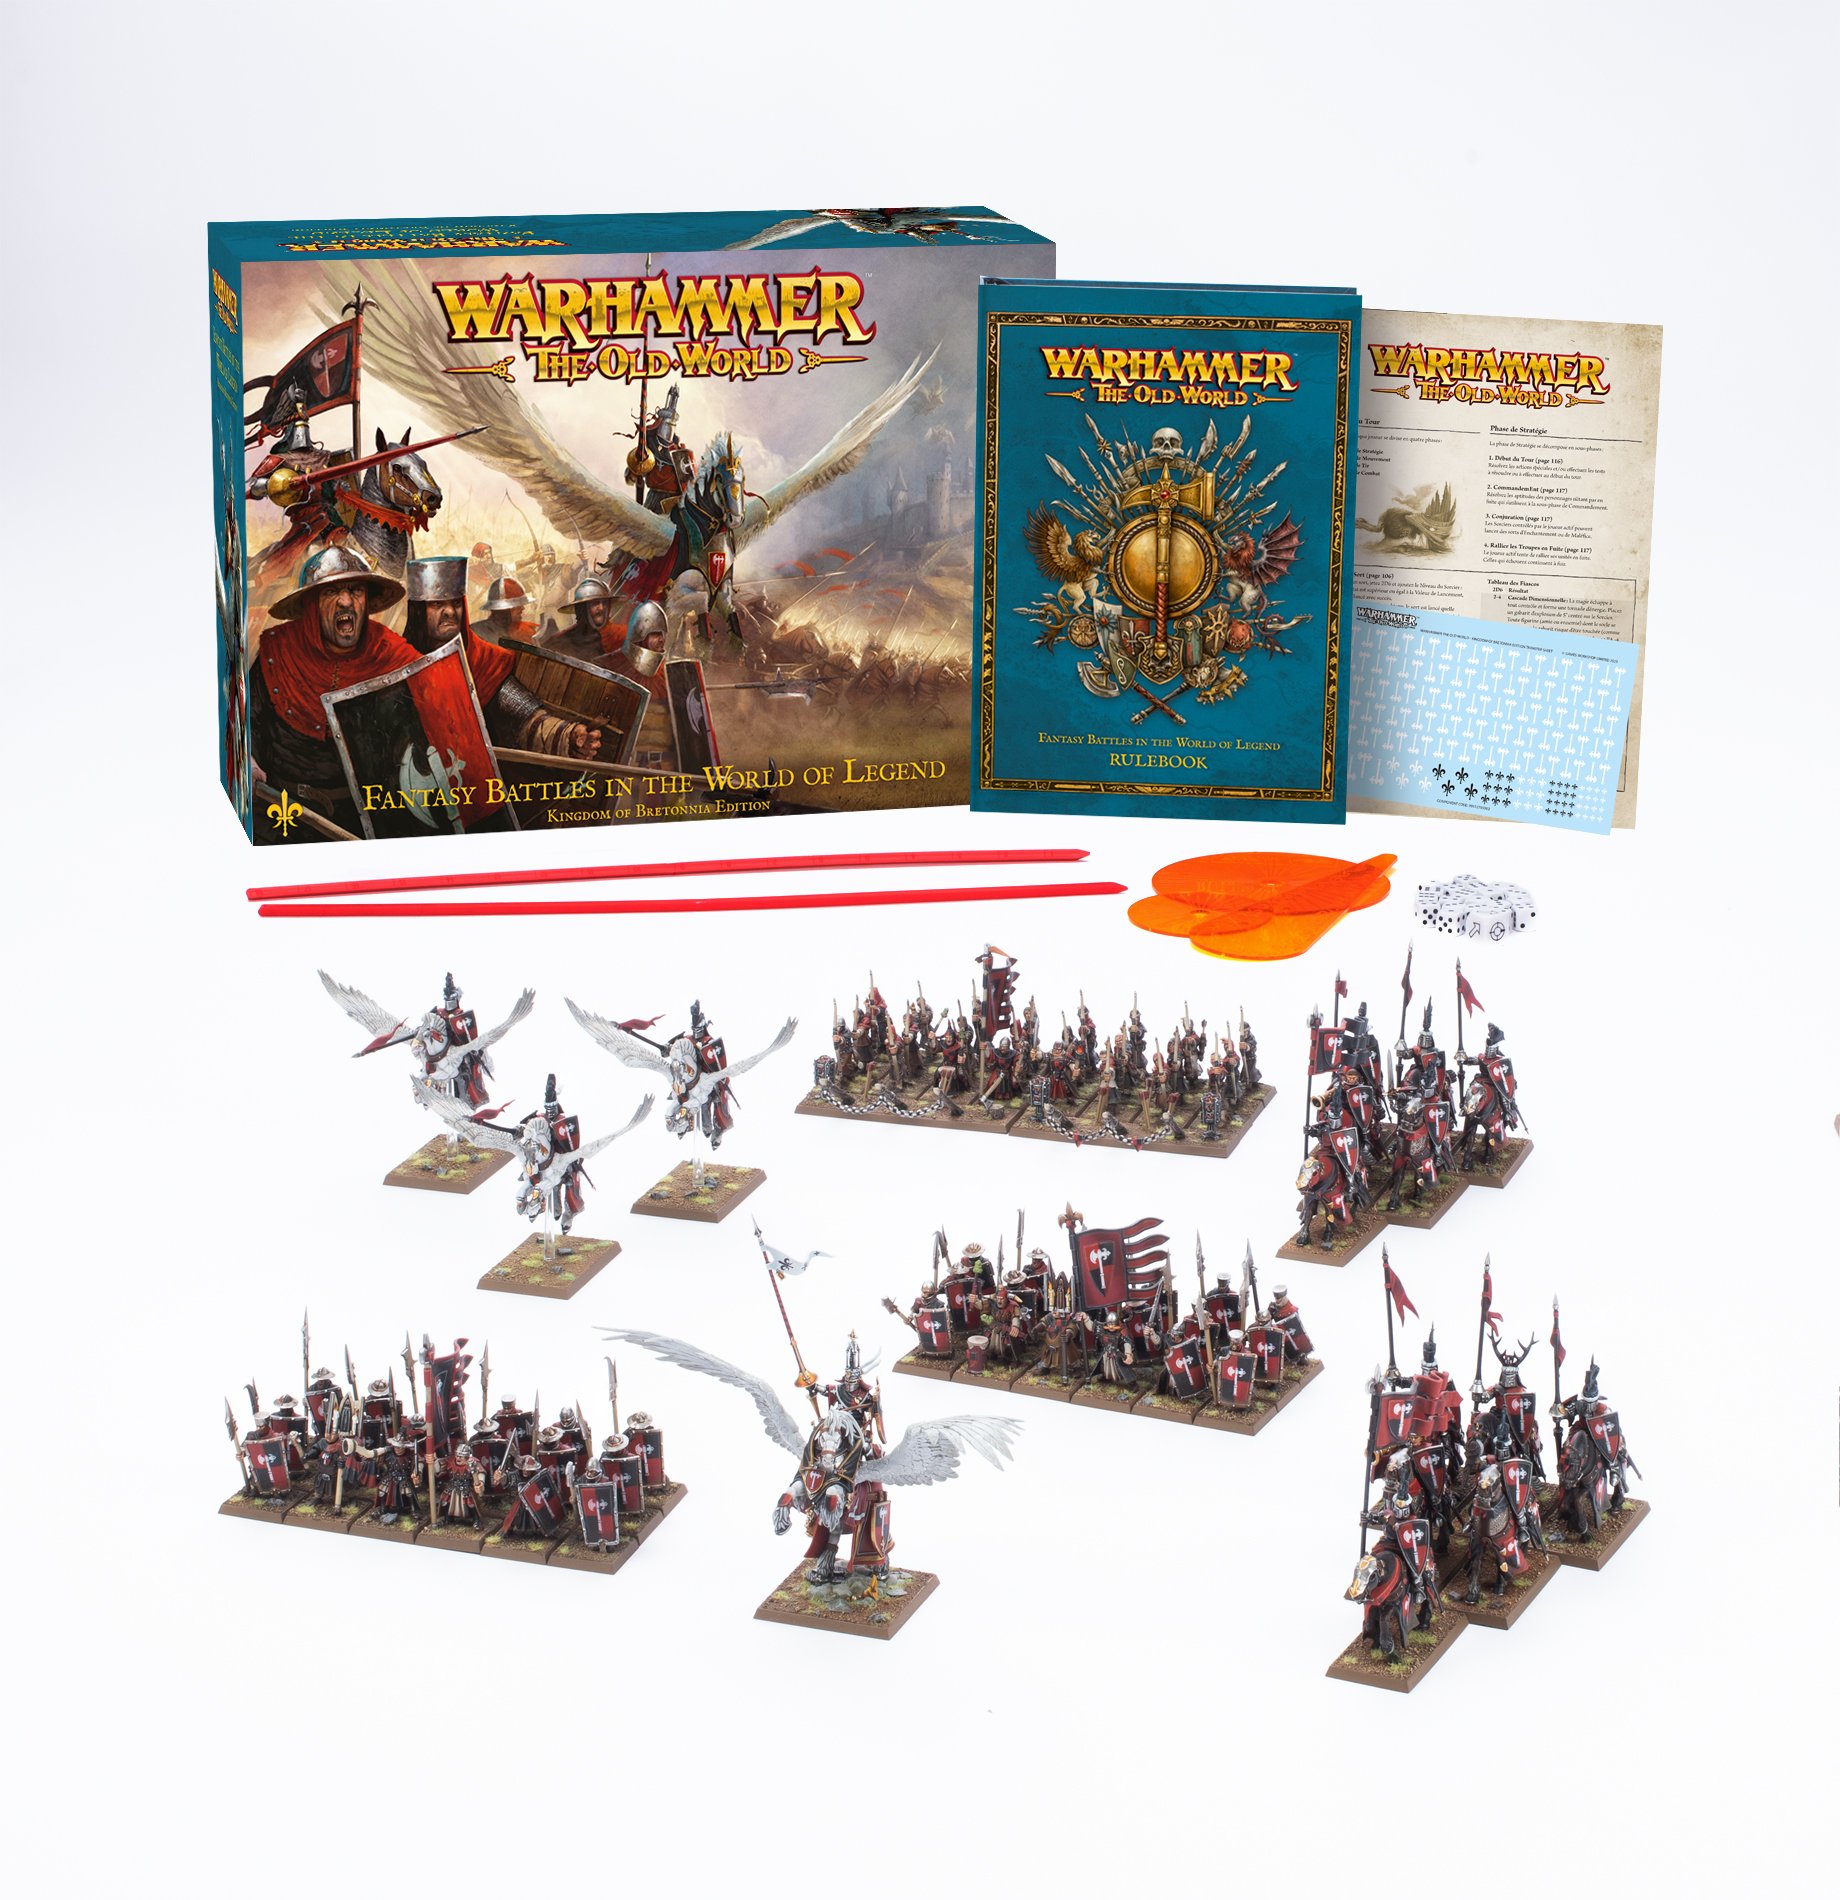 Warhammer: The Old World: Kingdom of Bretonnia Edition 